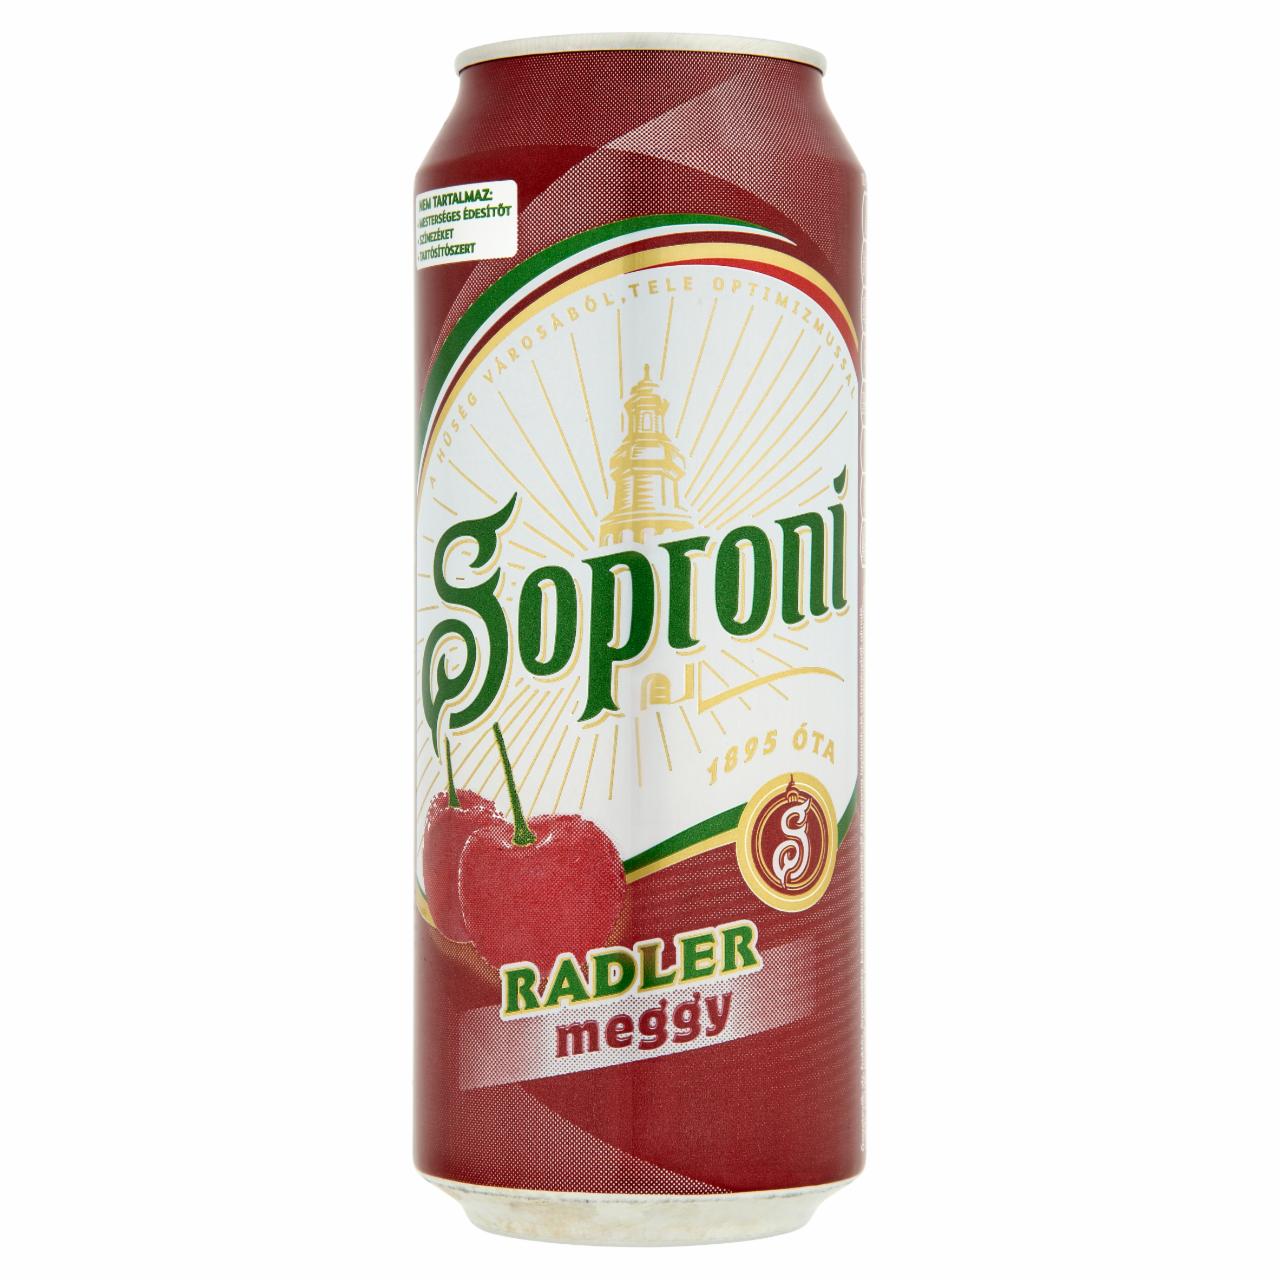 Képek - Soproni Radler meggyízű sörital 2% 0,5 l